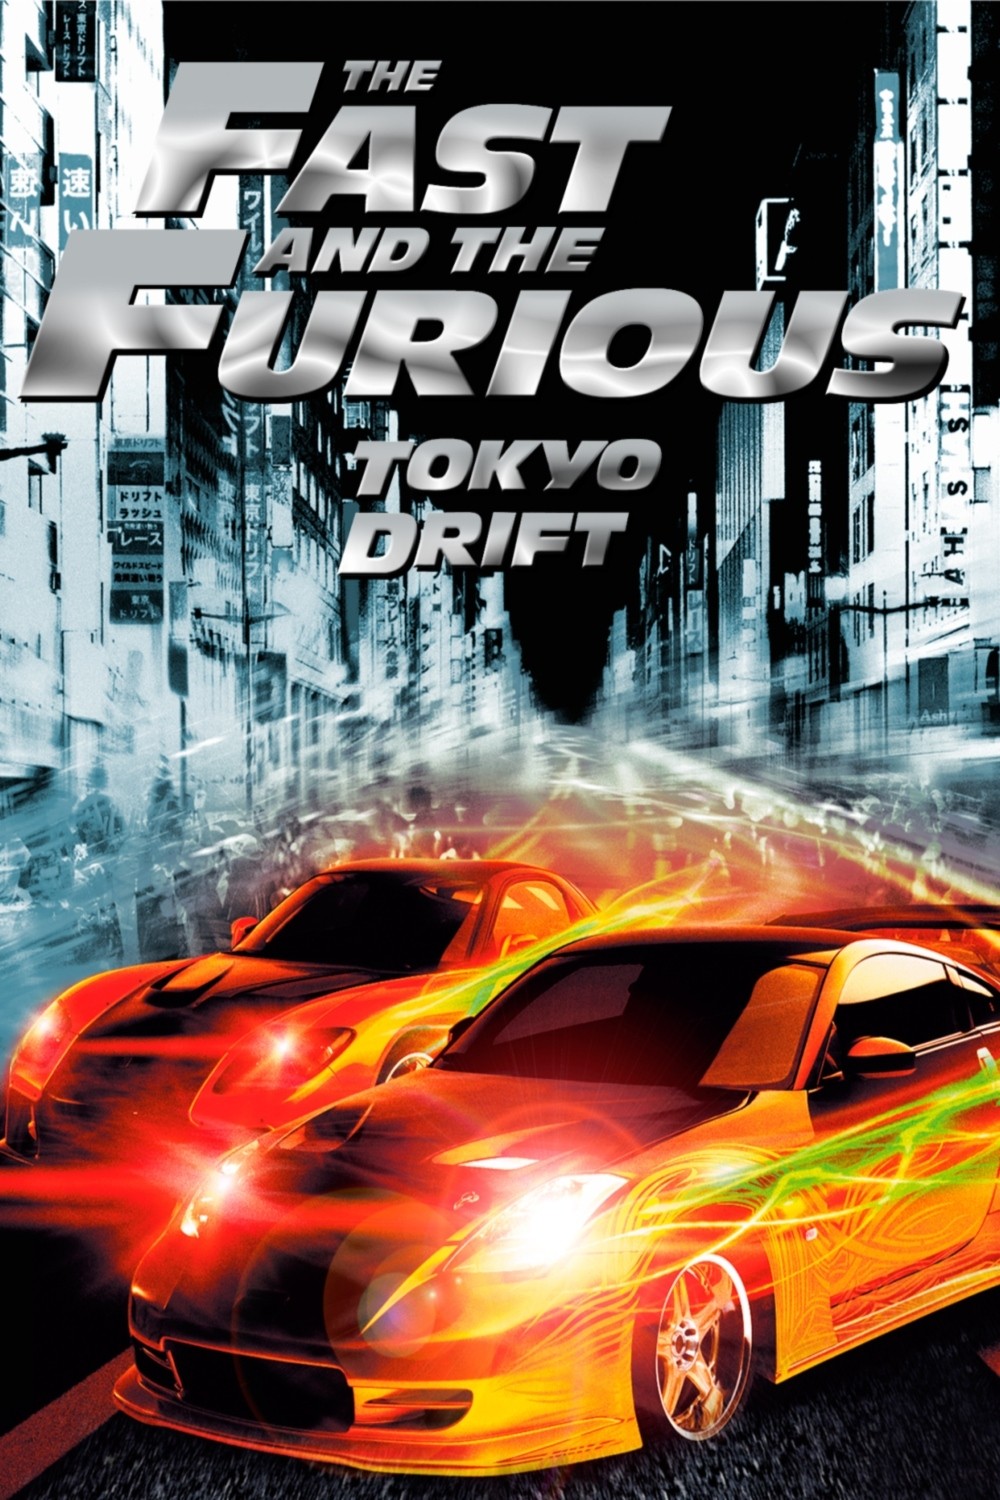 Hızlı ve Öfkeli 3 Tokyo Yarışı